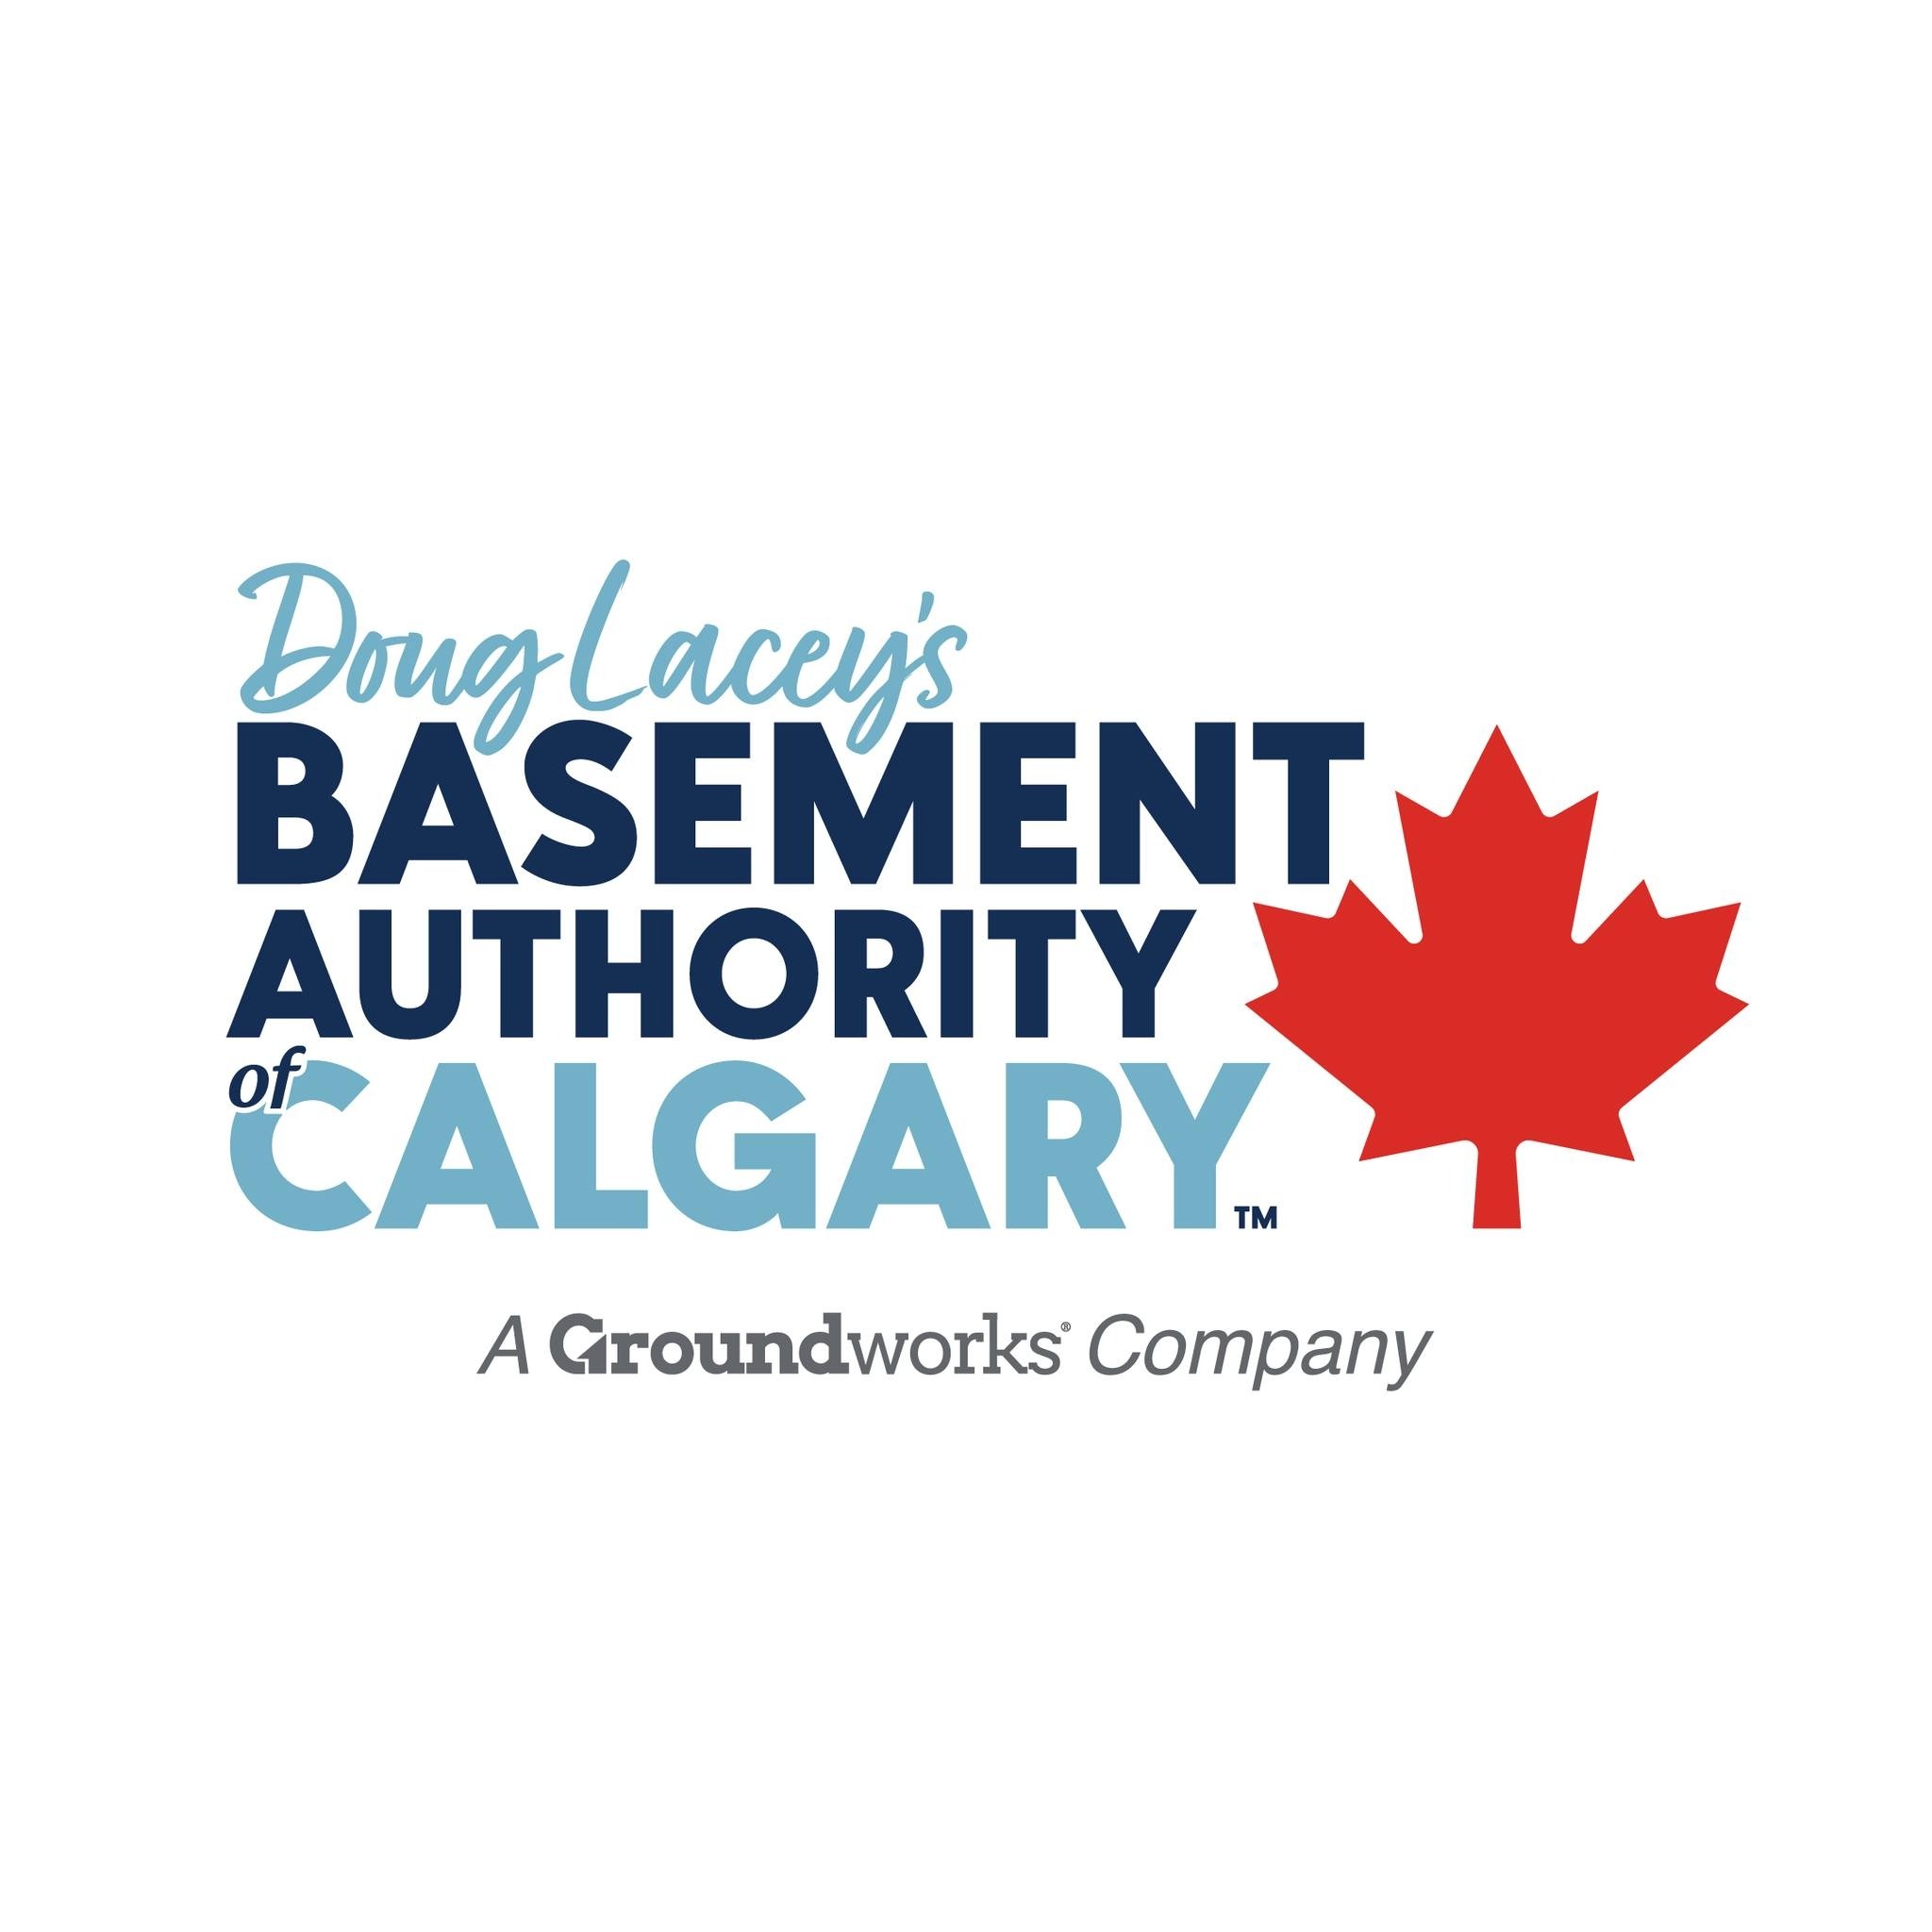 Basement Authority of Calgary